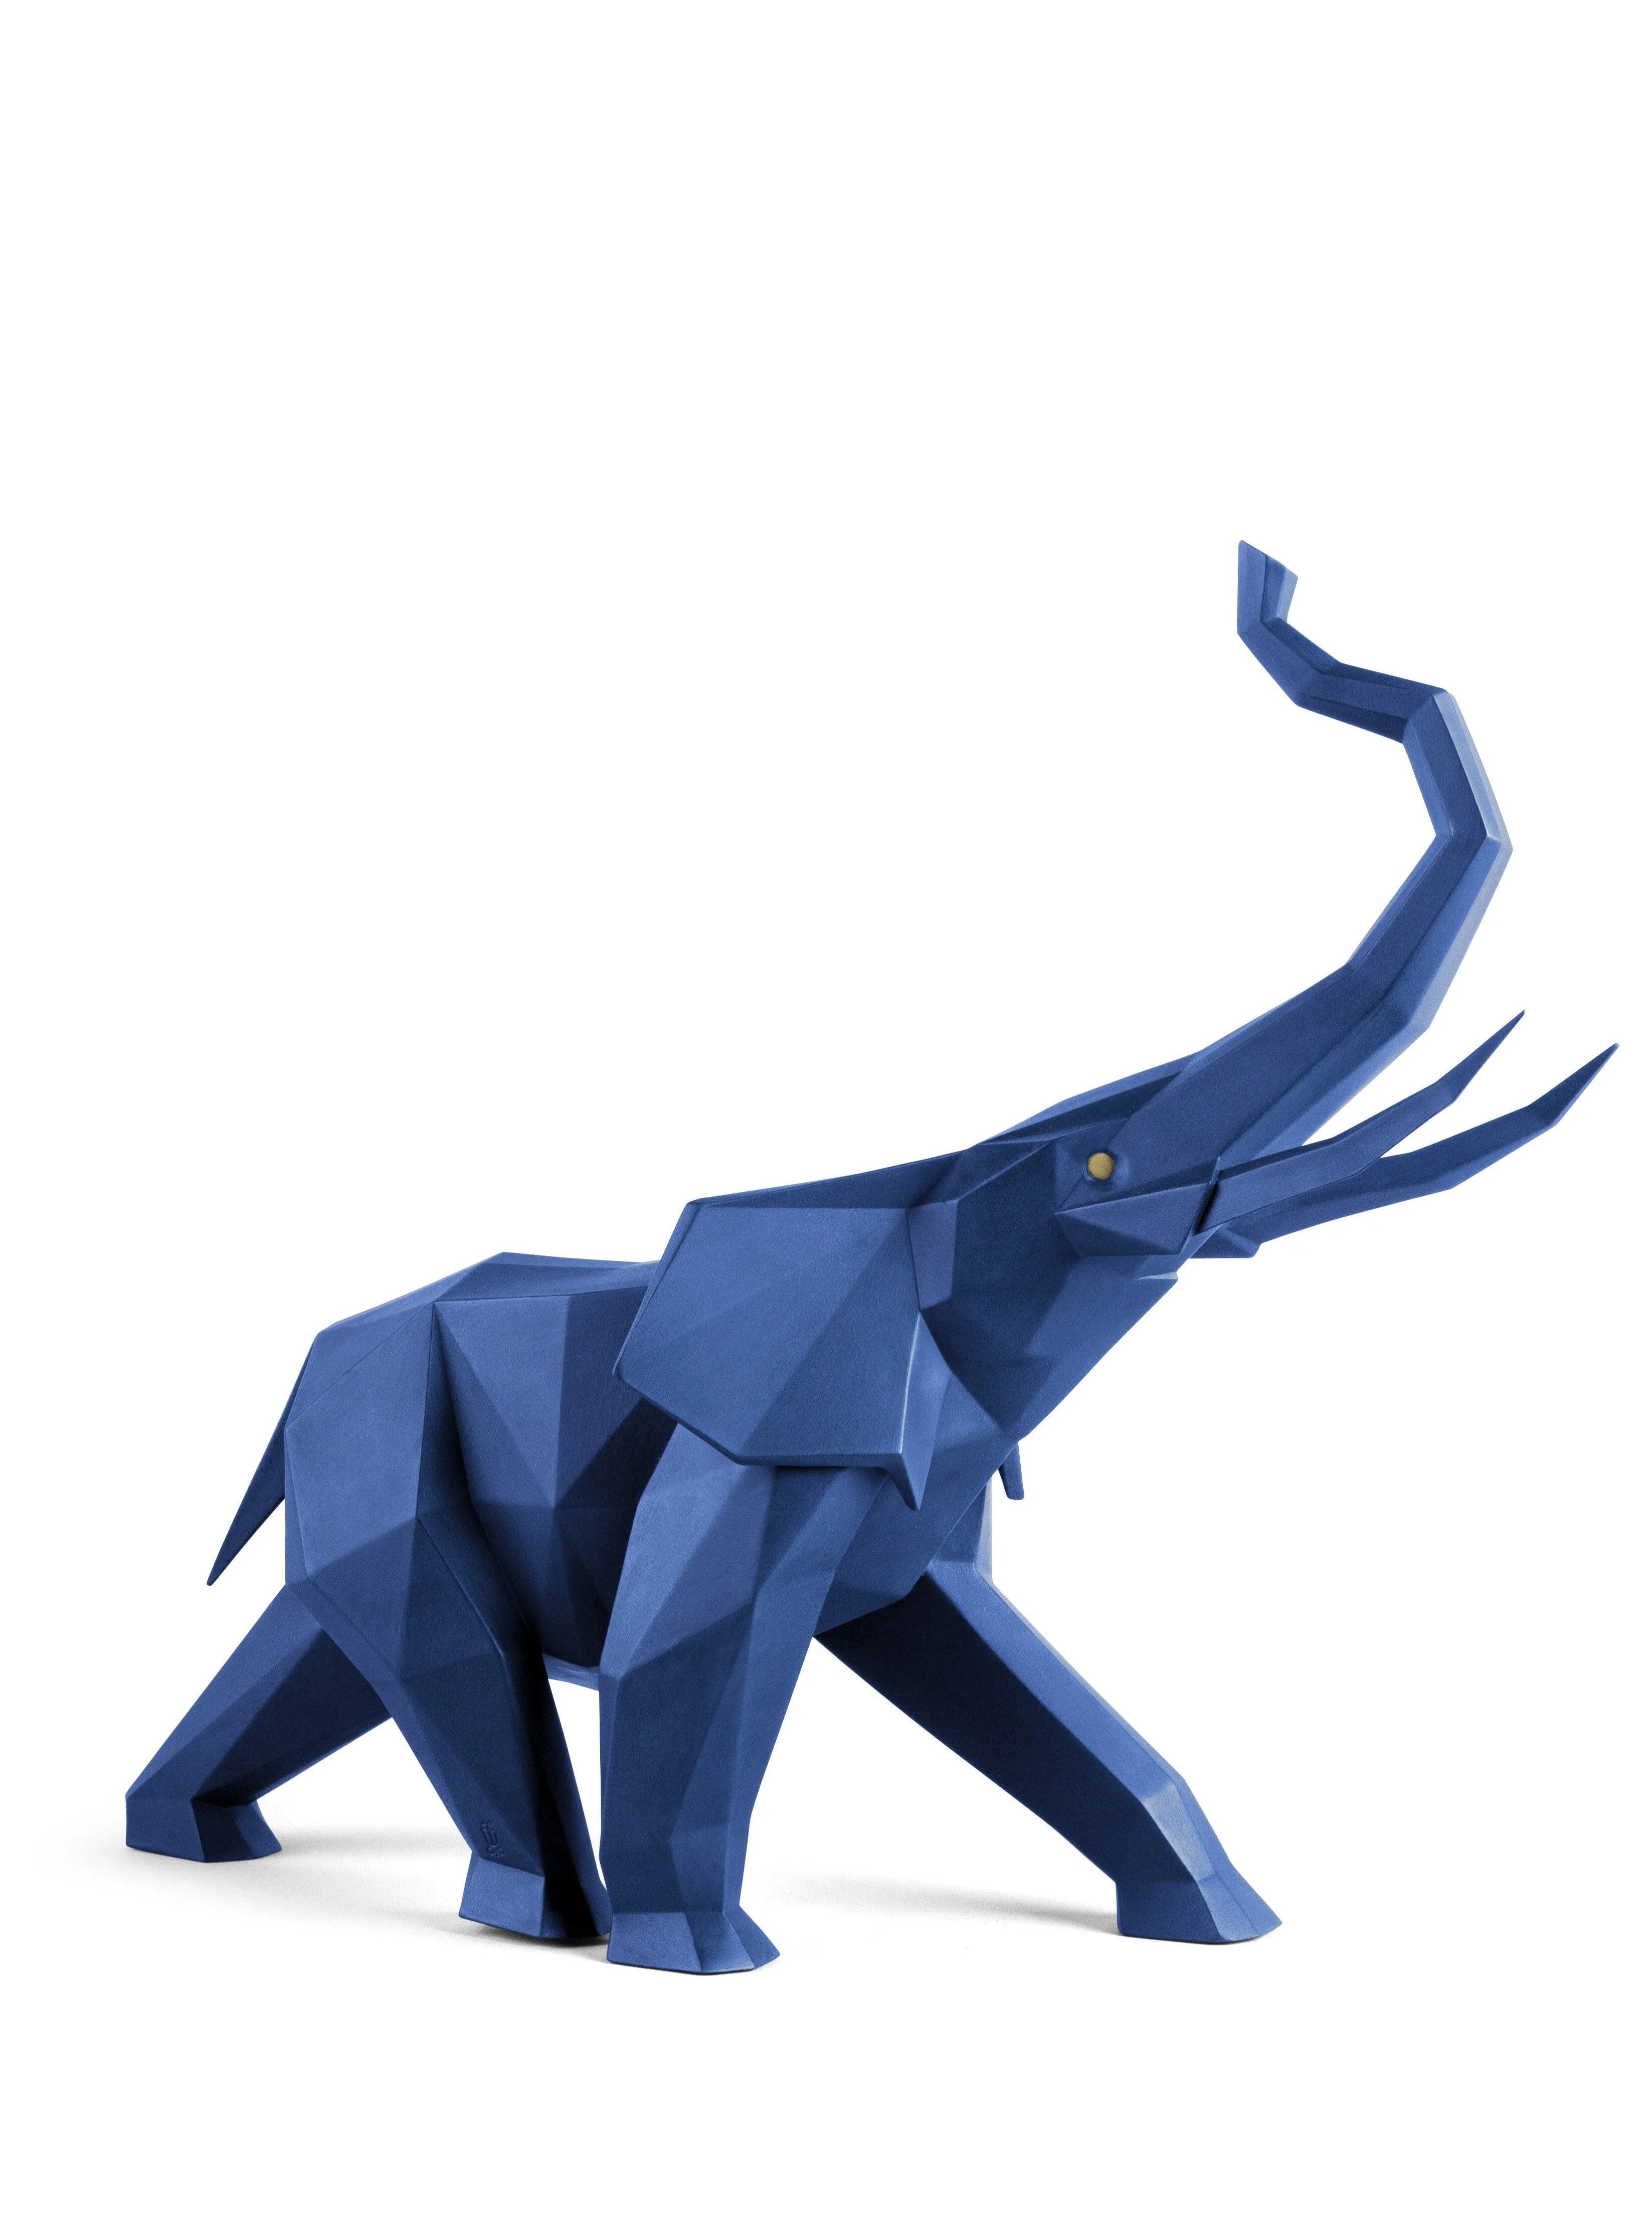 Elefante Azul